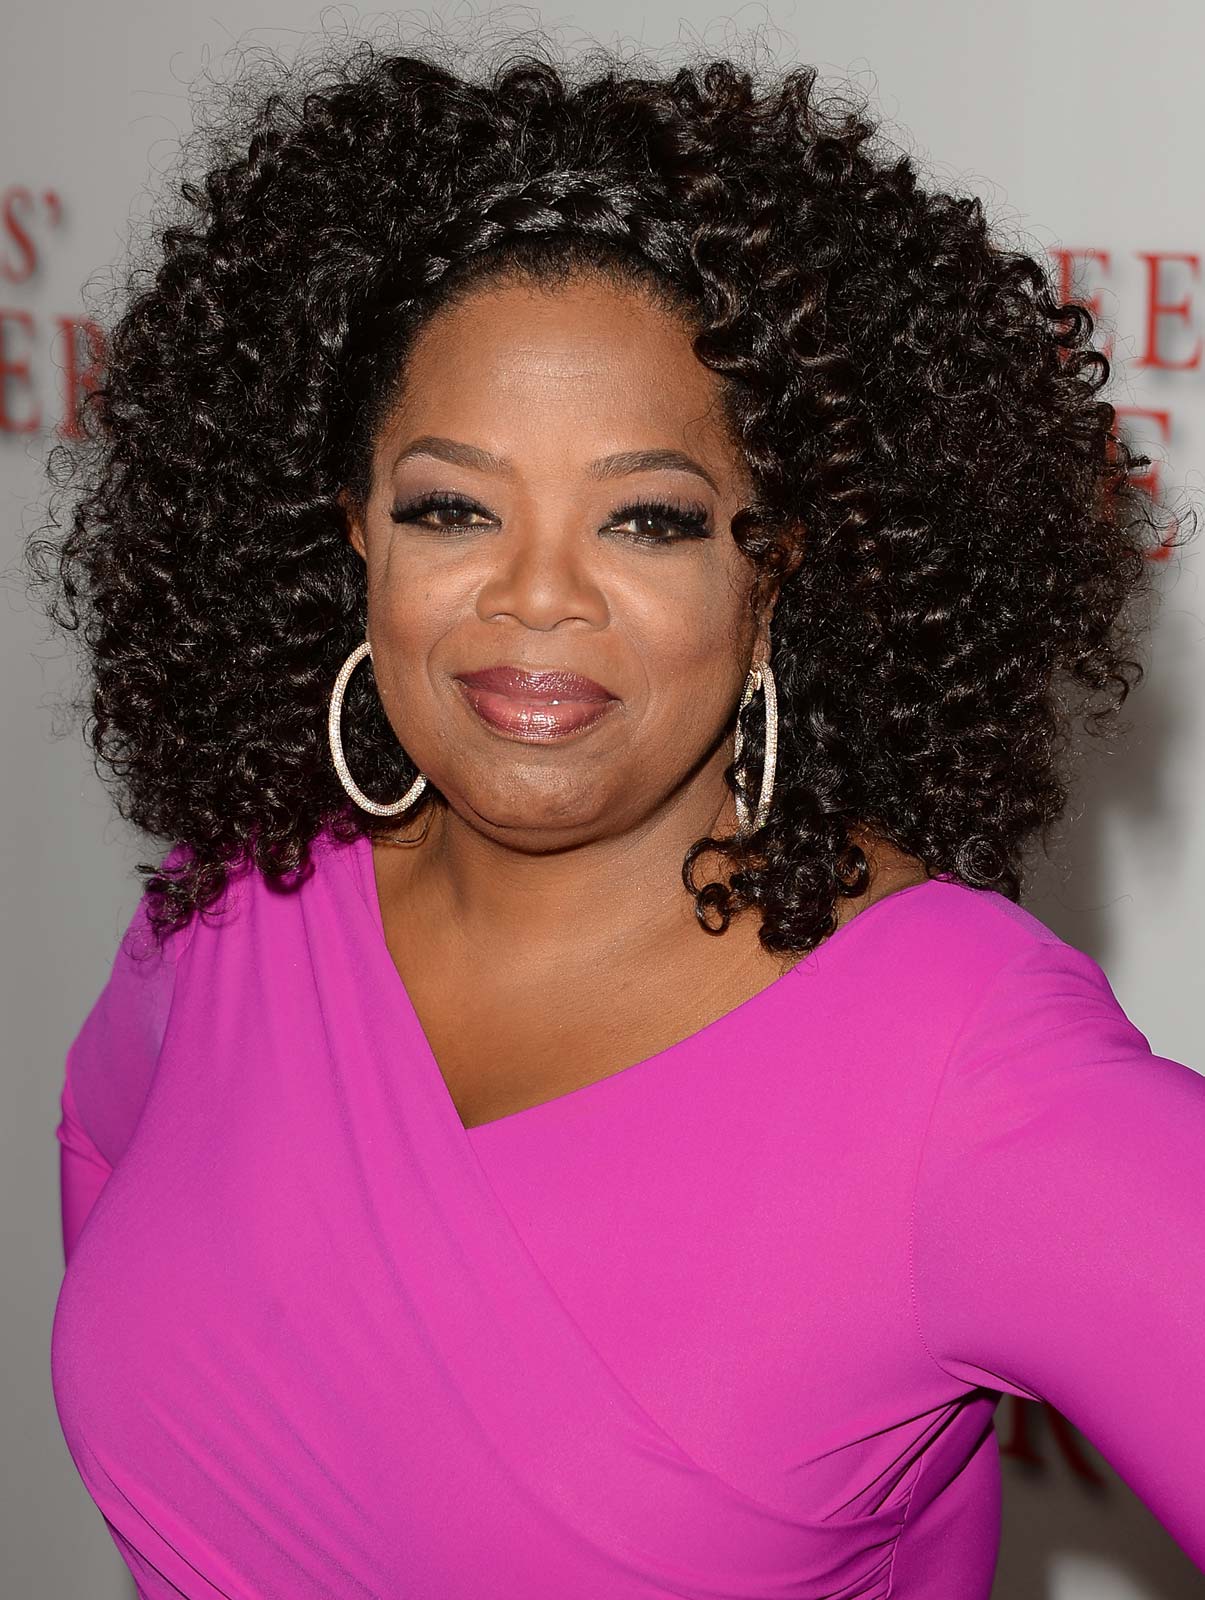 Oprah Winfrey 10 richest women in entertainment